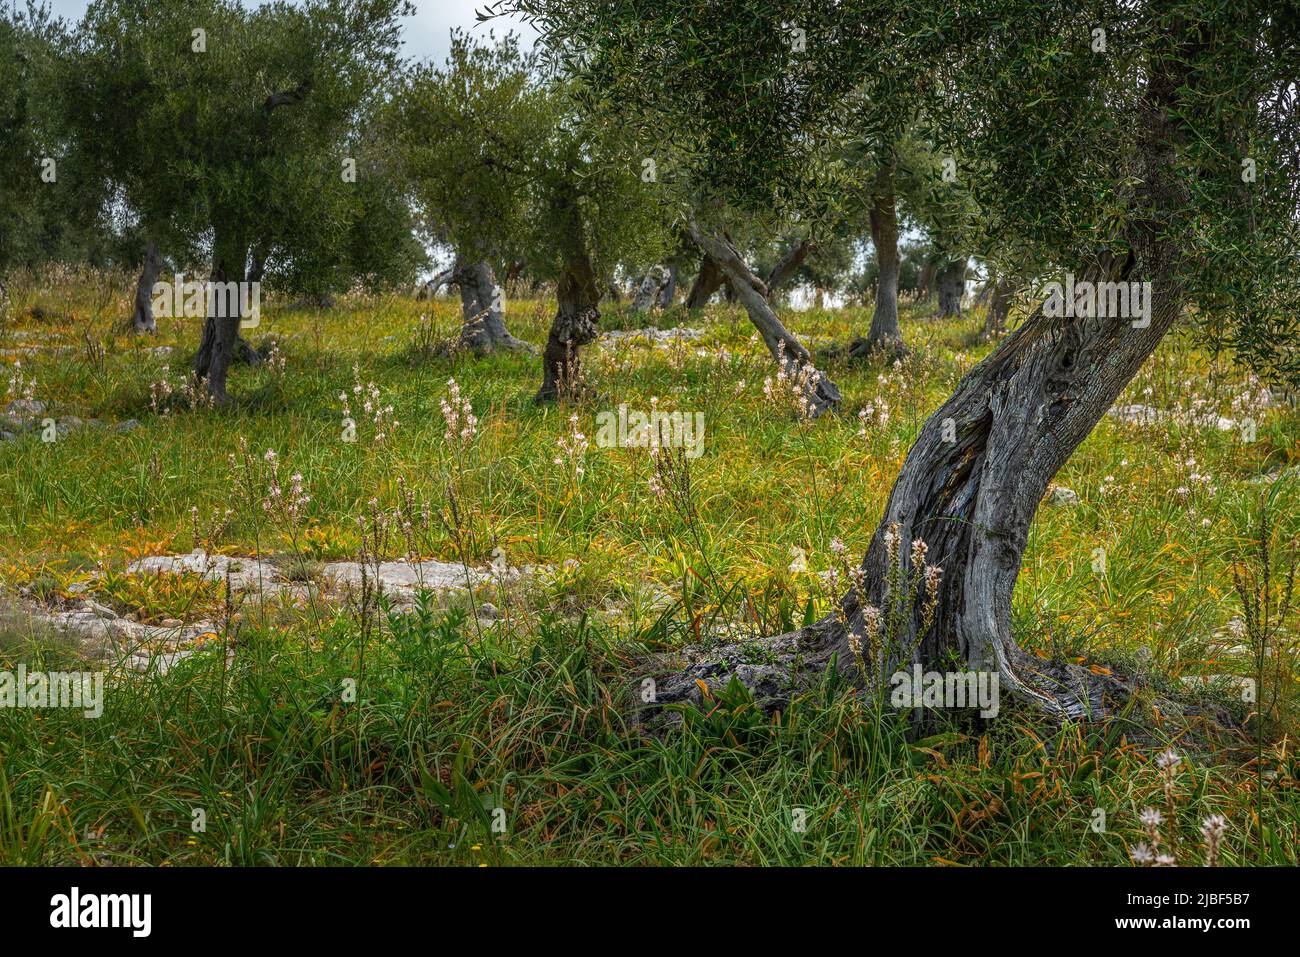 oliveraie de Gargano, Puglia. oliveraie méditerranéenne laïque. Plantation traditionnelle le jour du printemps. Puglia, Italie, Europe Banque D'Images